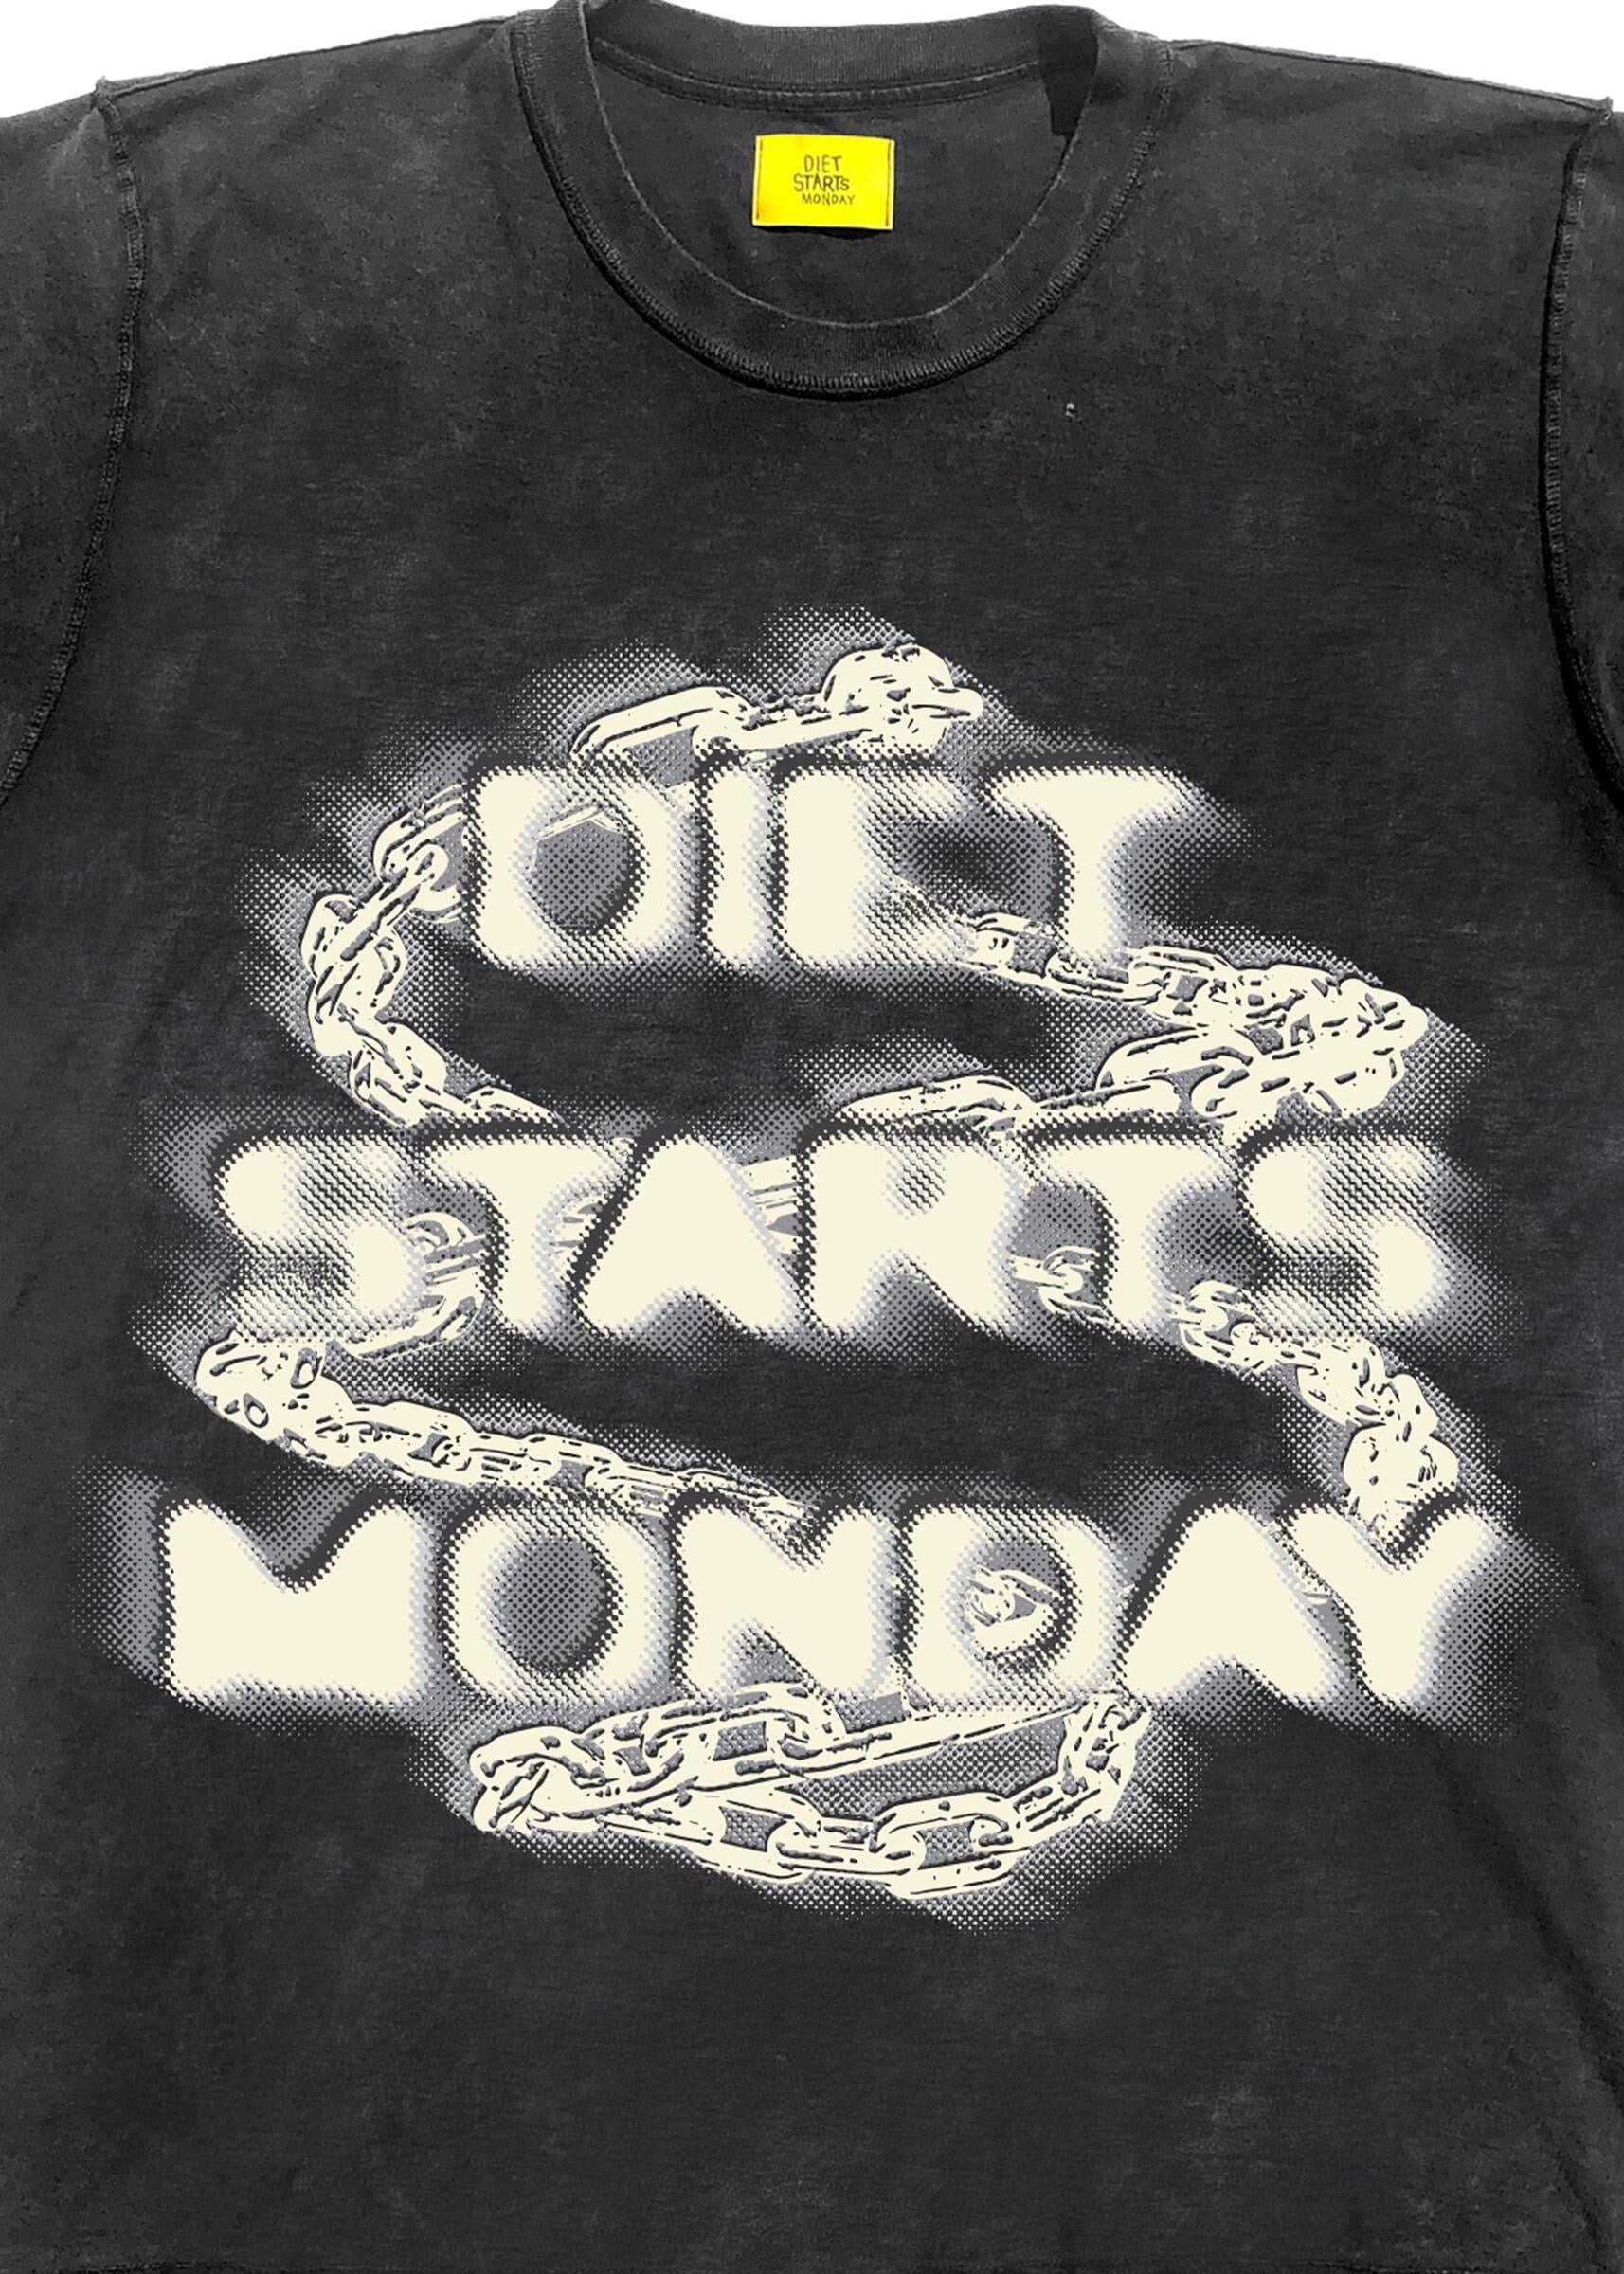 Diet Starts Monday Chain Tee - Vintage Black